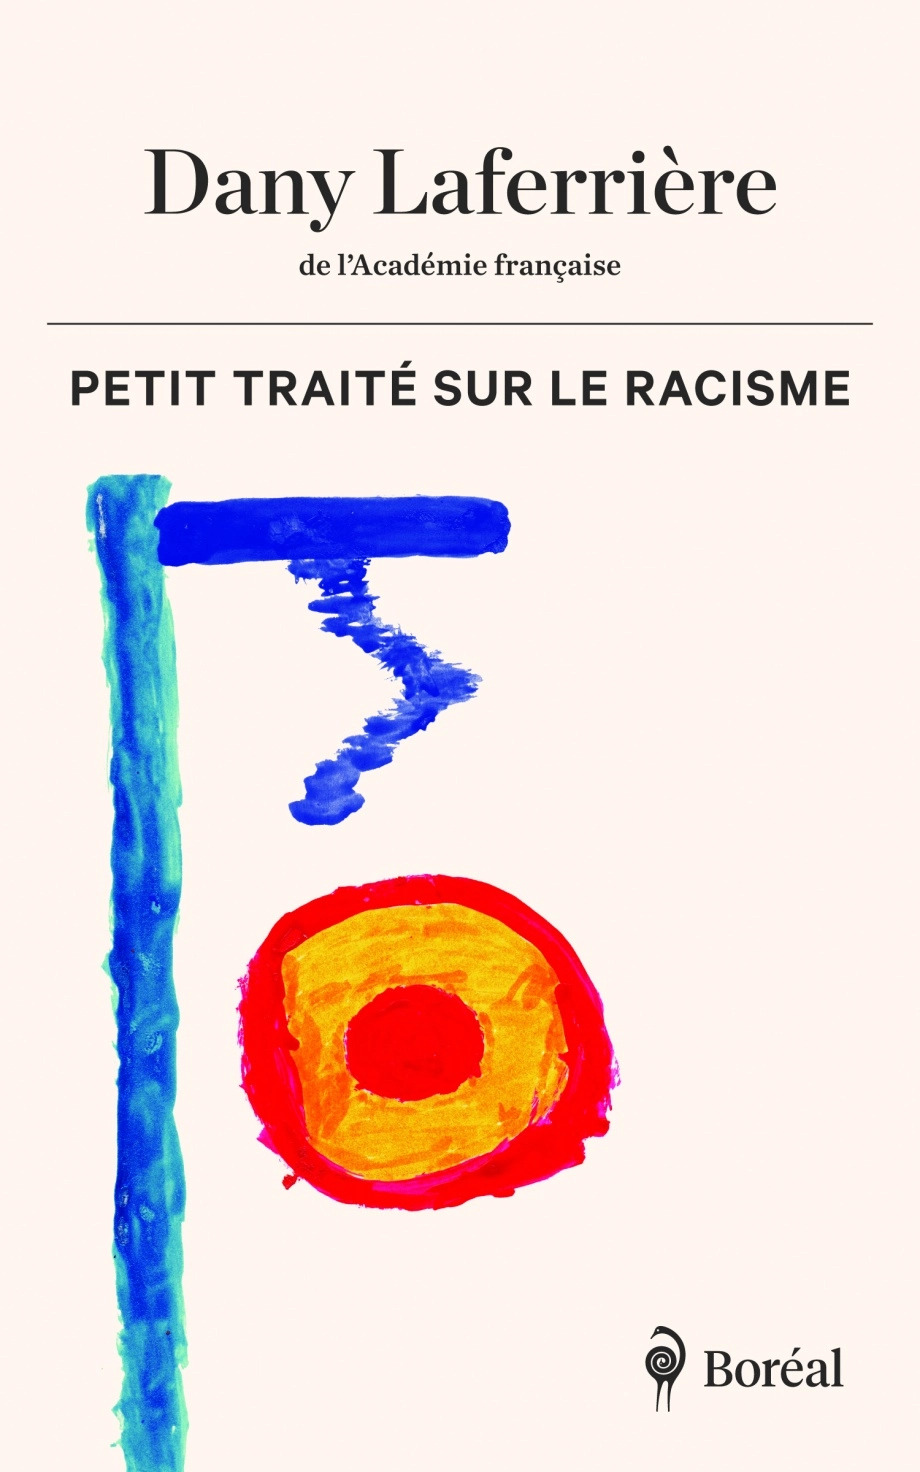 "Petit Traité sur le Racisme" de Dany Laferrière